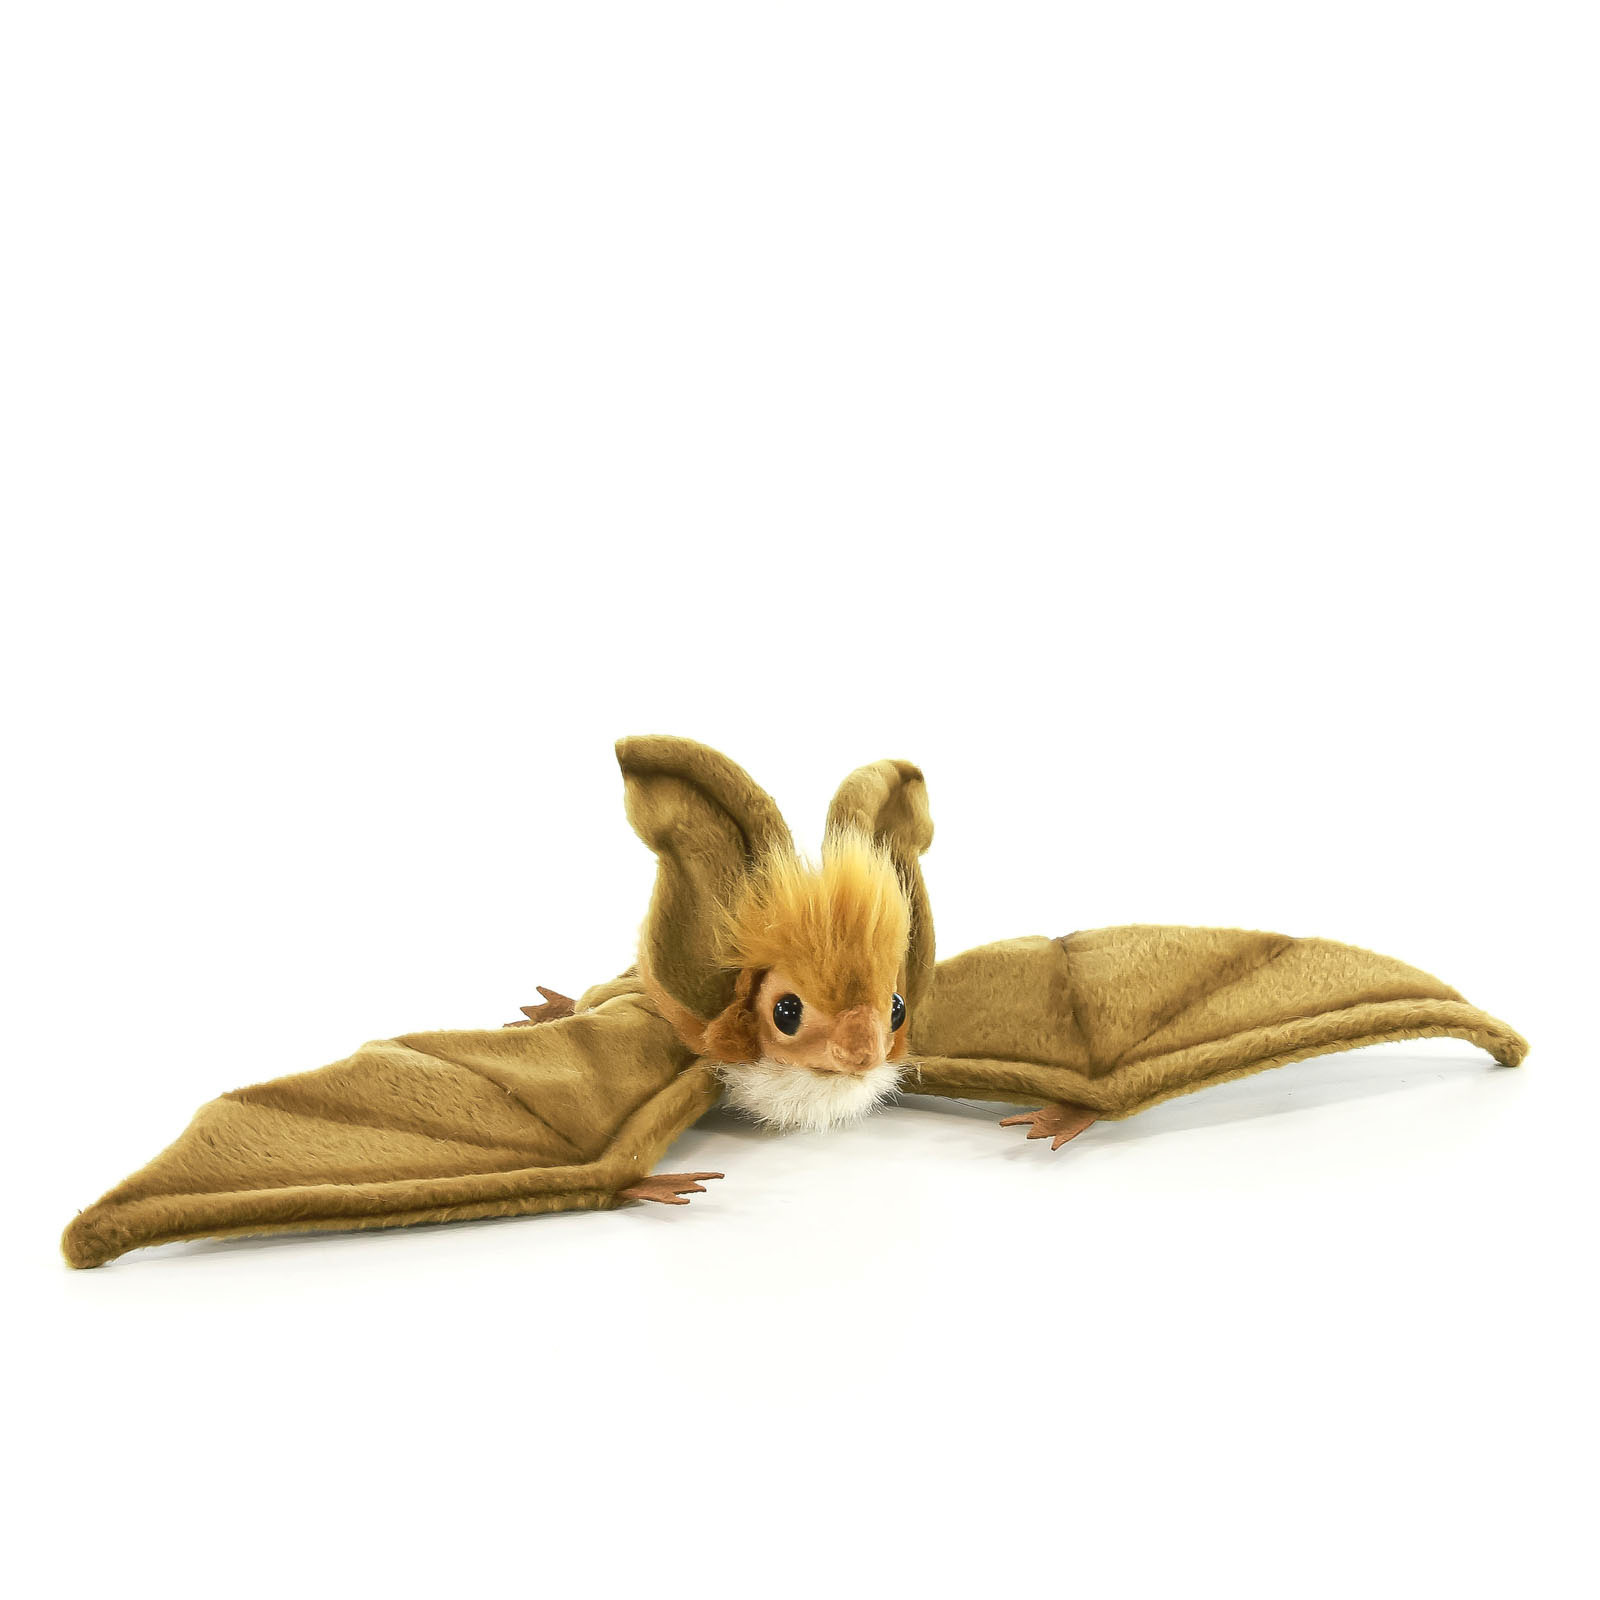 Реалистичная мягкая игрушка Hansa Creation Коричневая летучая мышь парящая, 37 см игрушка мягкая мышь в комбинезоне 20 см